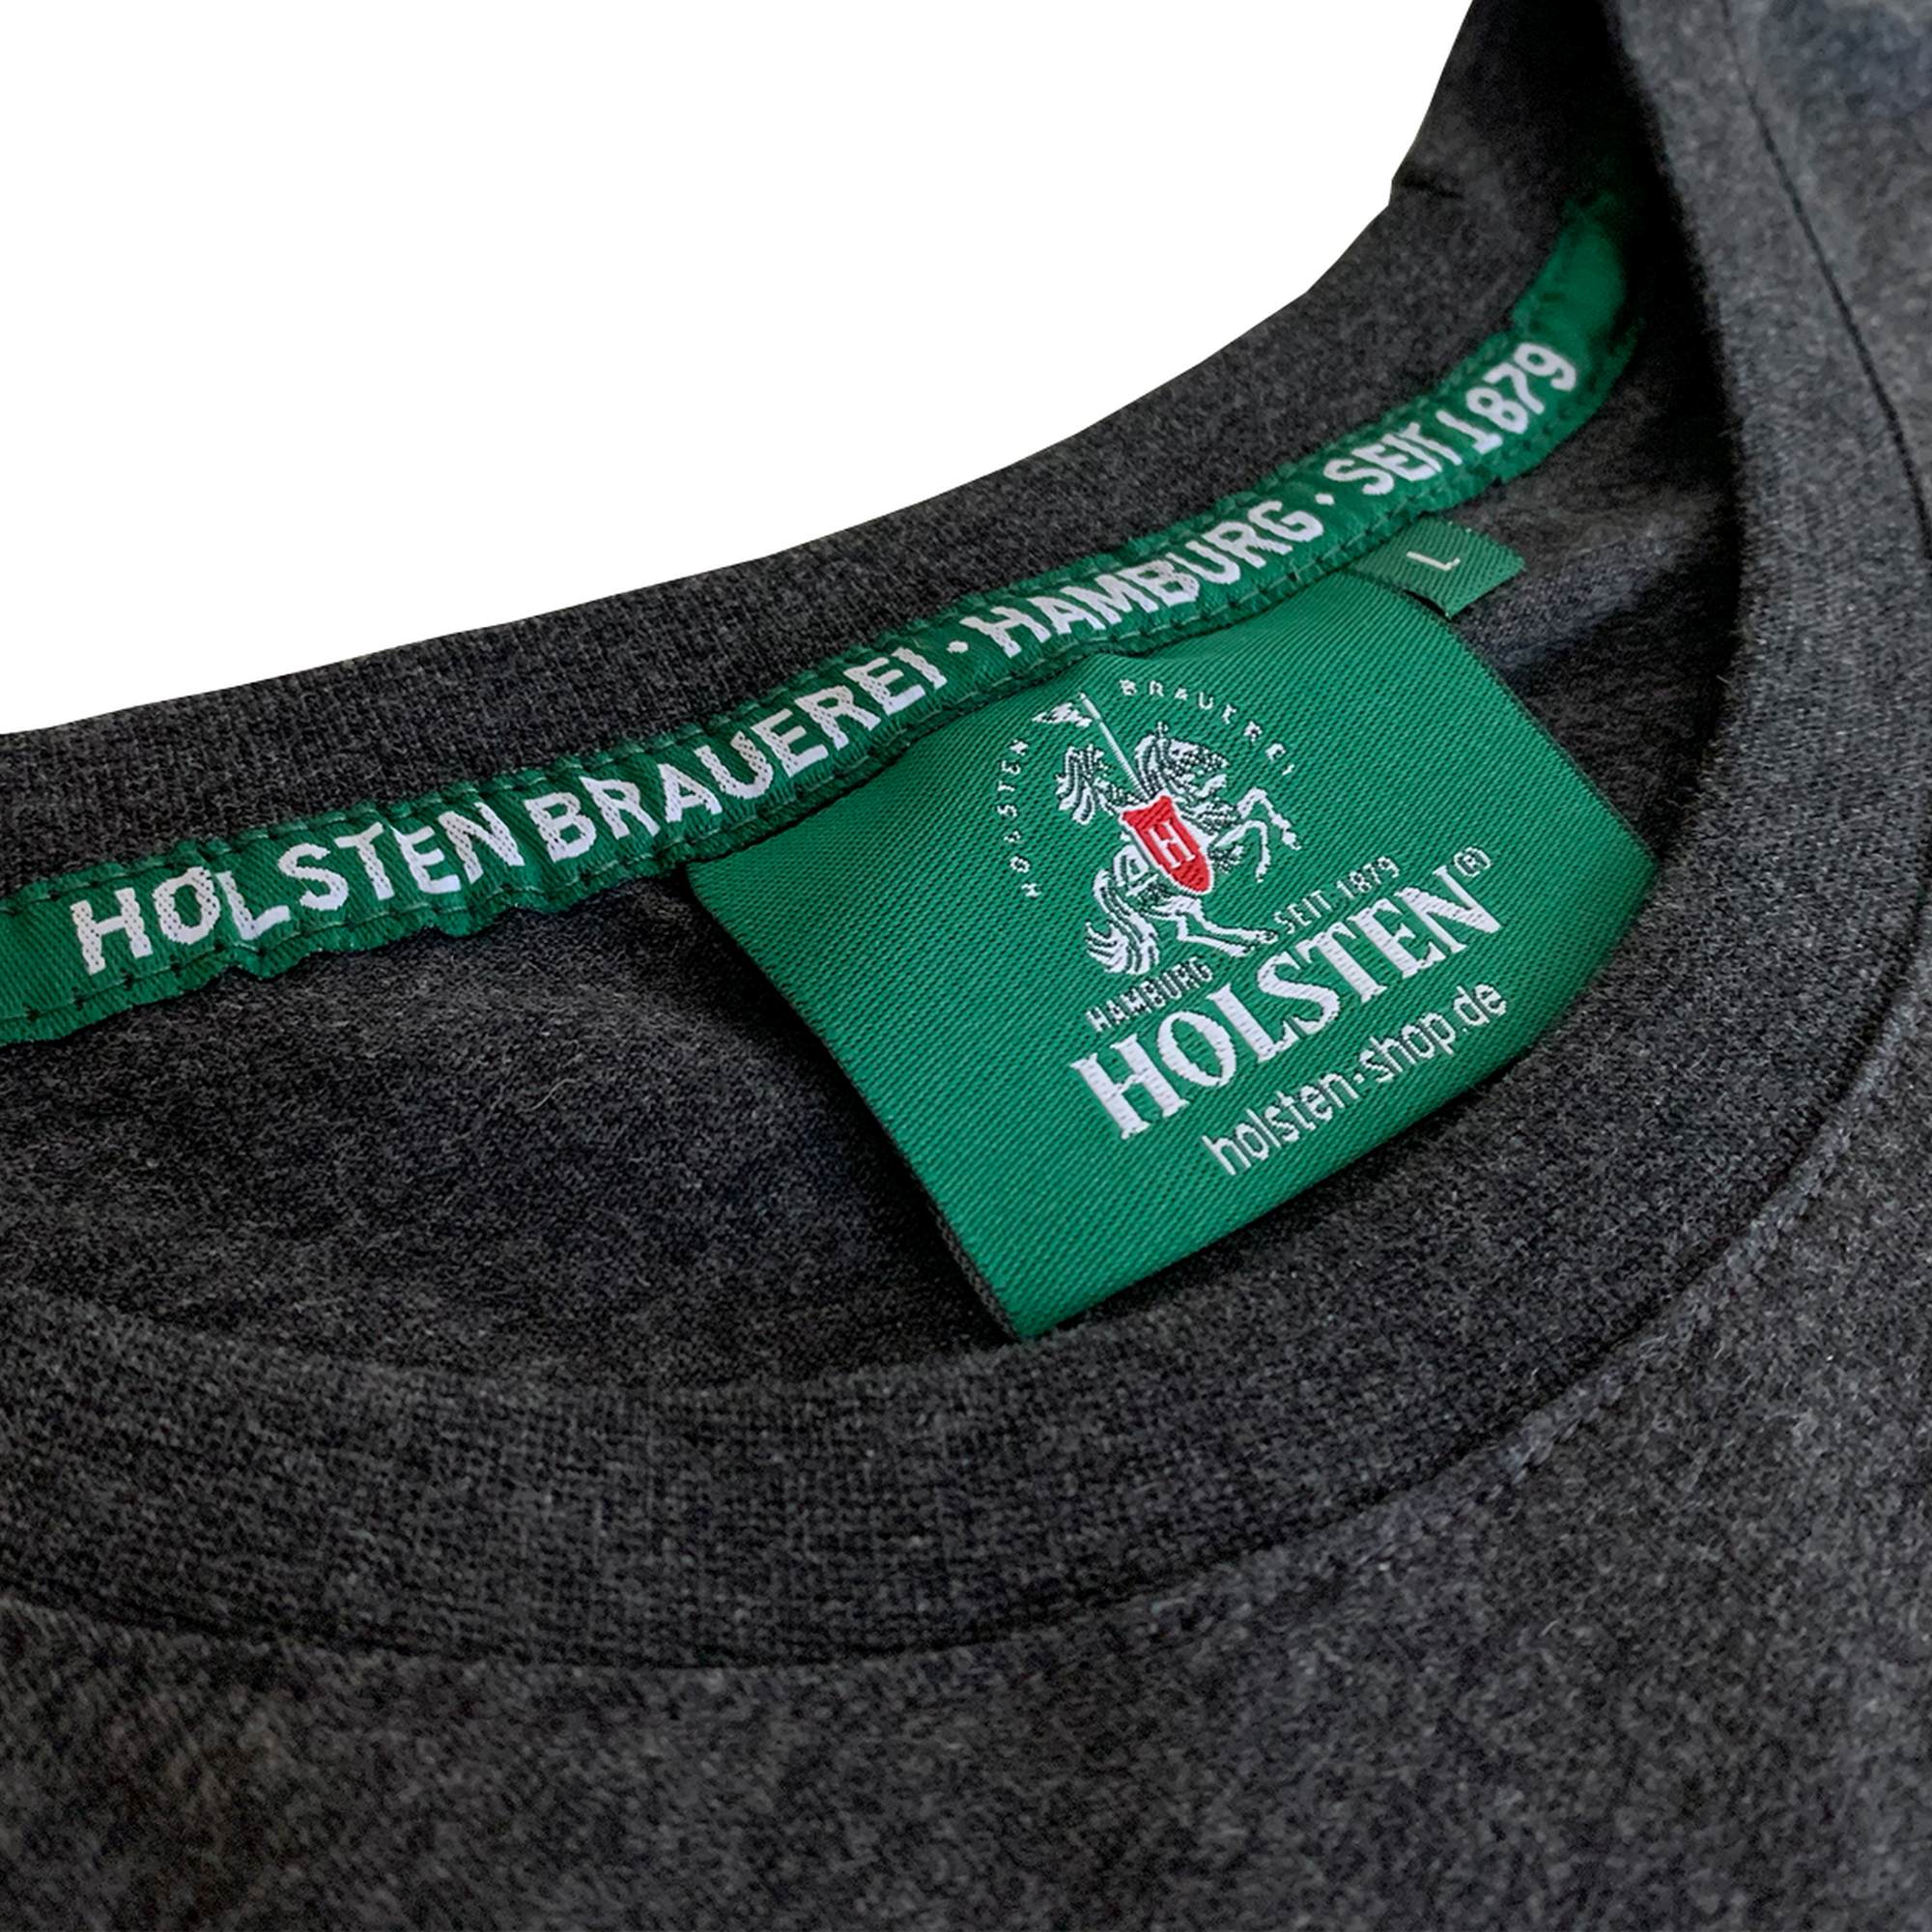 Holsten - Damen T-Shirt Ritter gross - anthrazit